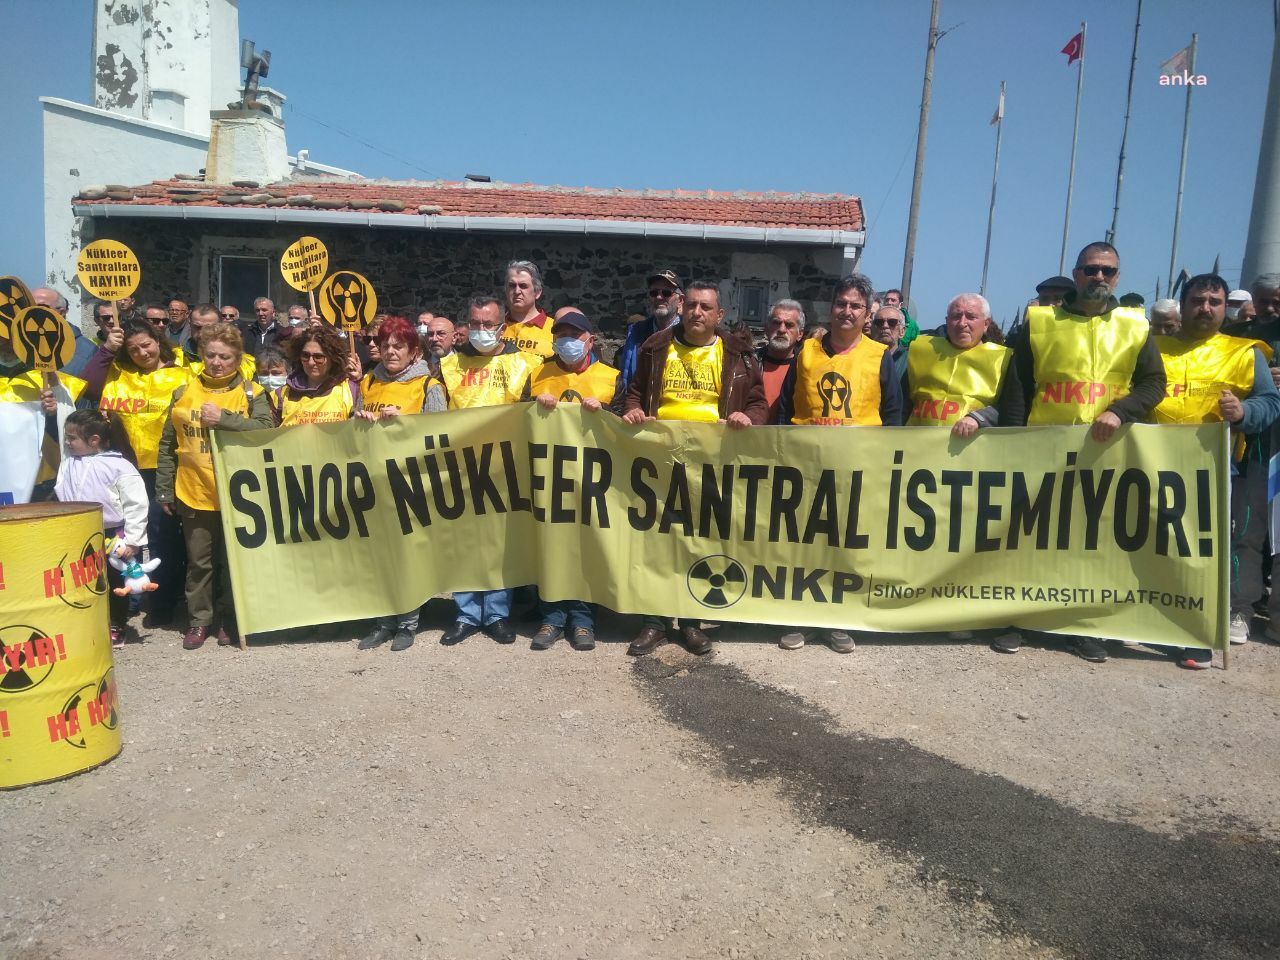 Sinop Nükleer Karşıtı Platform: Mahkeme heyeti suç işlemiştir